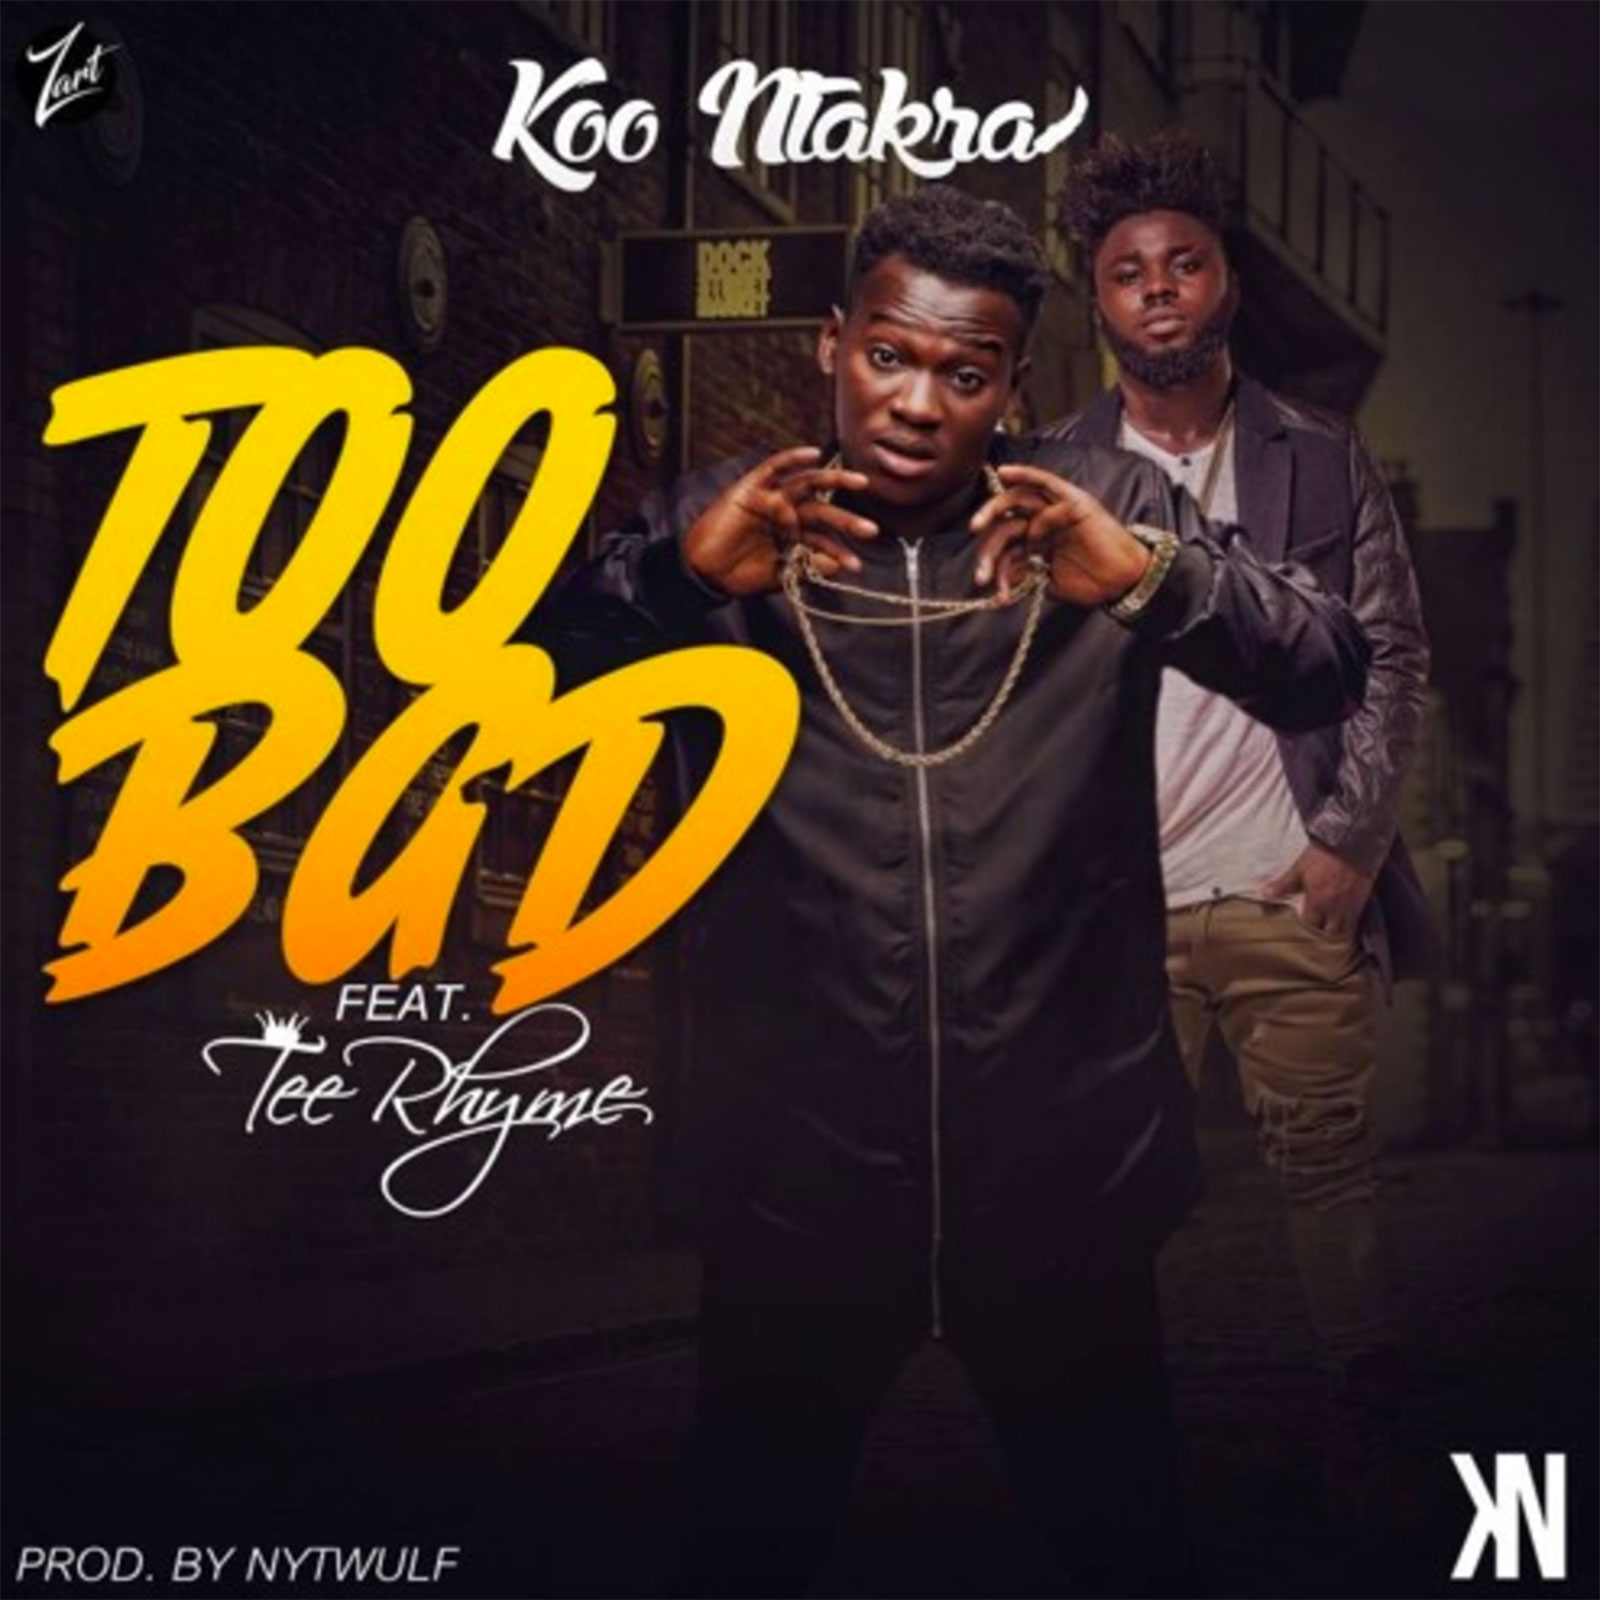 Too Bad by Koo Ntakra feat. Tee Rhyme